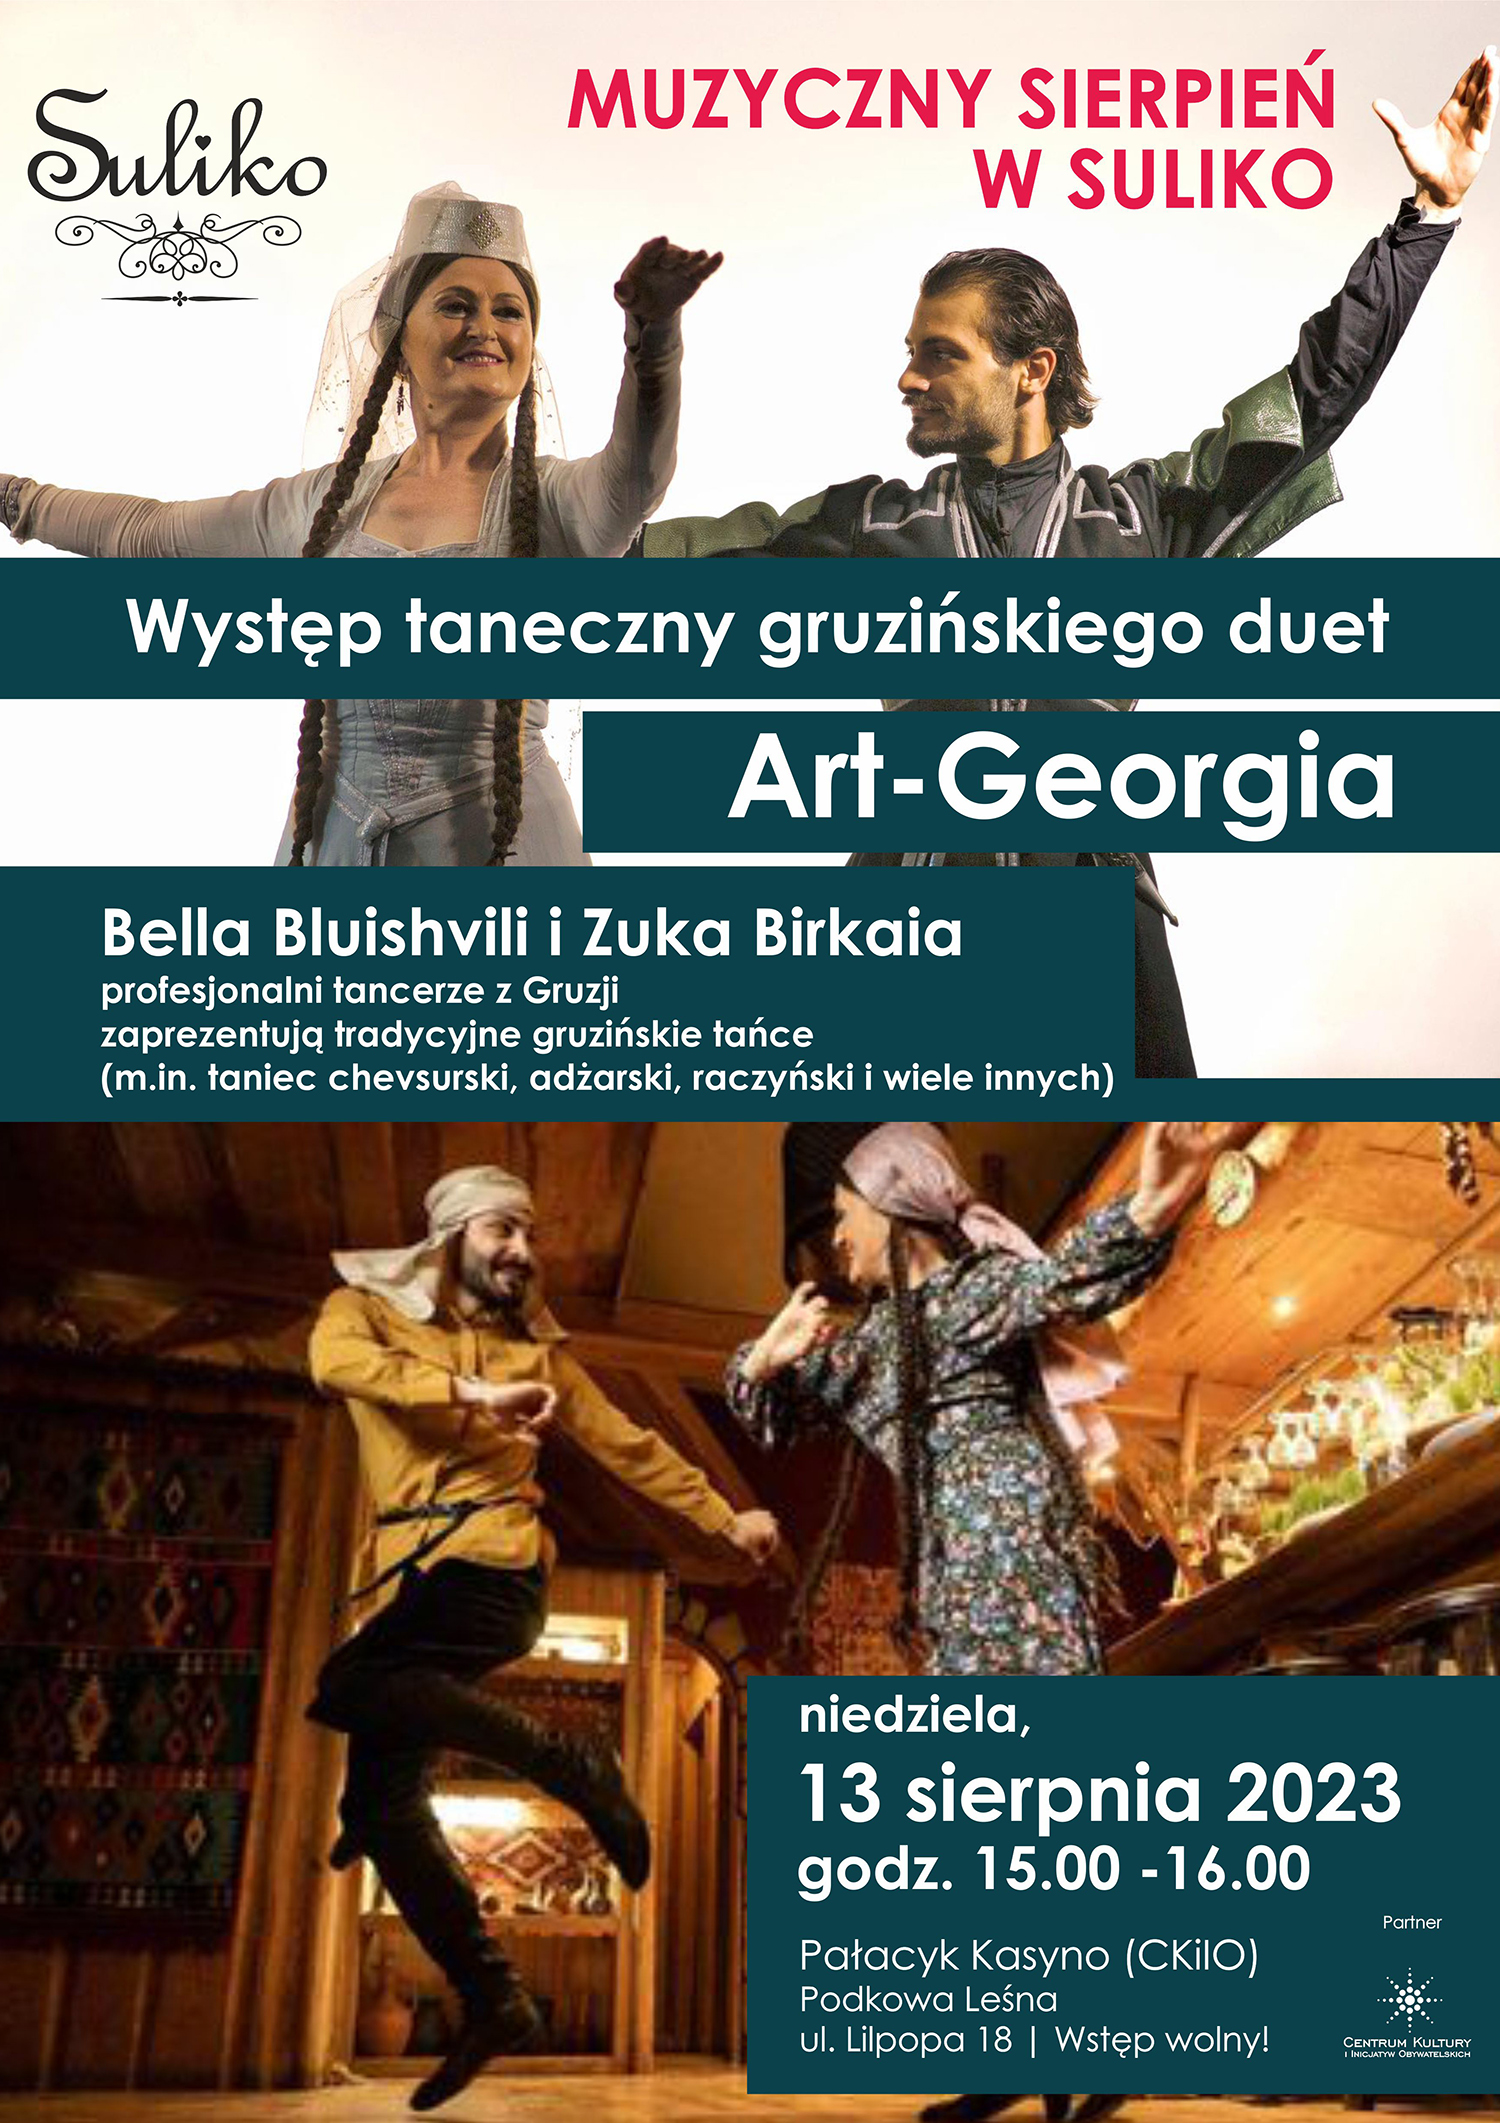 You are currently viewing MUZYCZNY SIERPIEŃ W SULIKO: Gruziński duet Art-Georgia